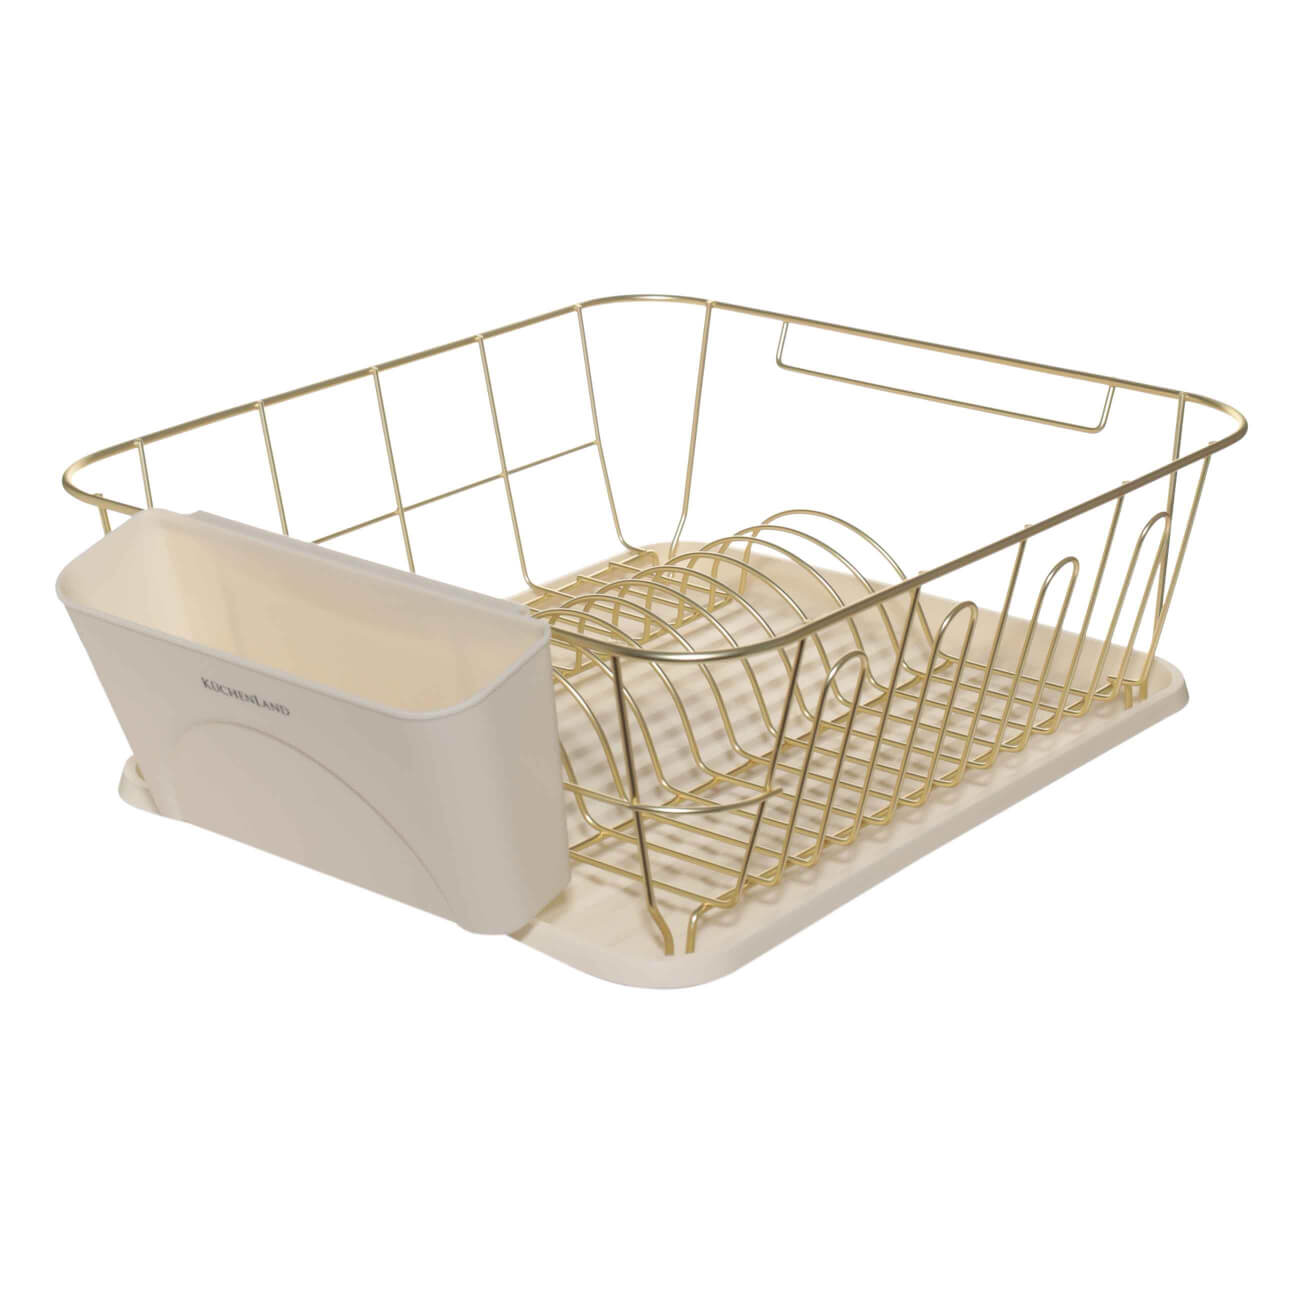 Сушилка для посуды, 37х33 см, с поддоном, металл/пластик, молочно-золотистая, Drying данко кормушка для собак дуговая с двумя мисками металл